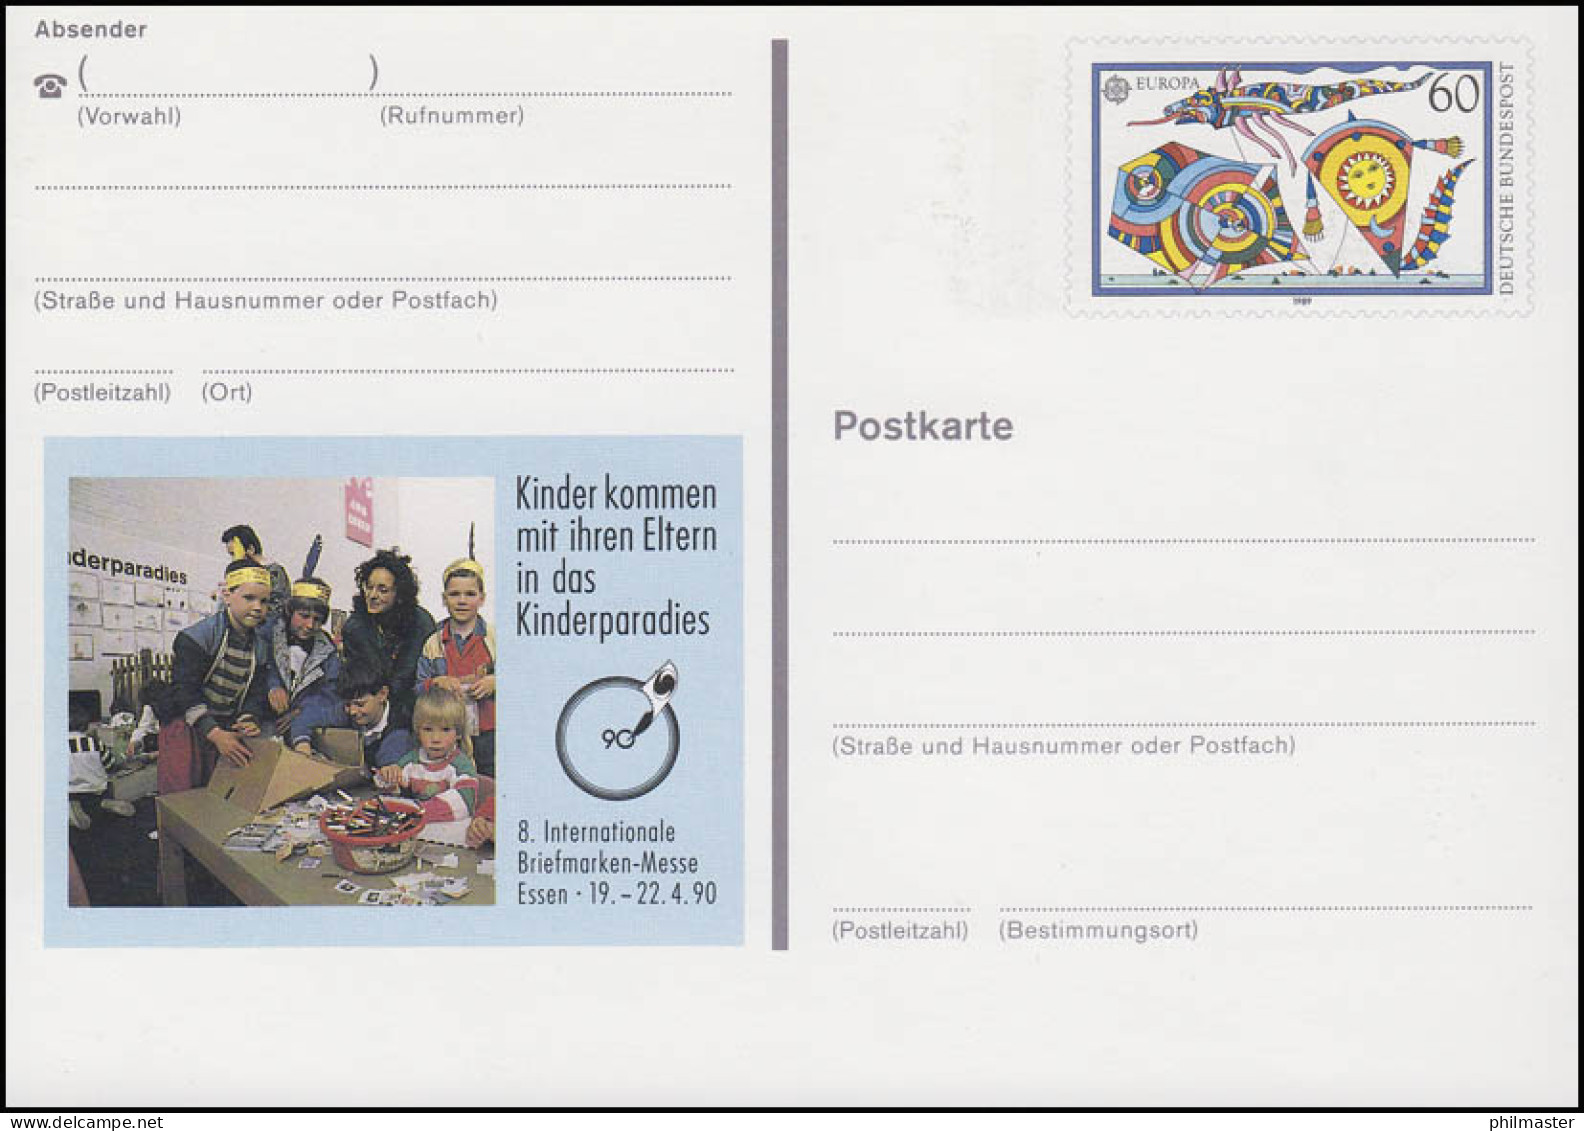 PSo 20 Briefmarken-Messe ESSEN - Kinderparadies 1990, ** - Postkarten - Ungebraucht